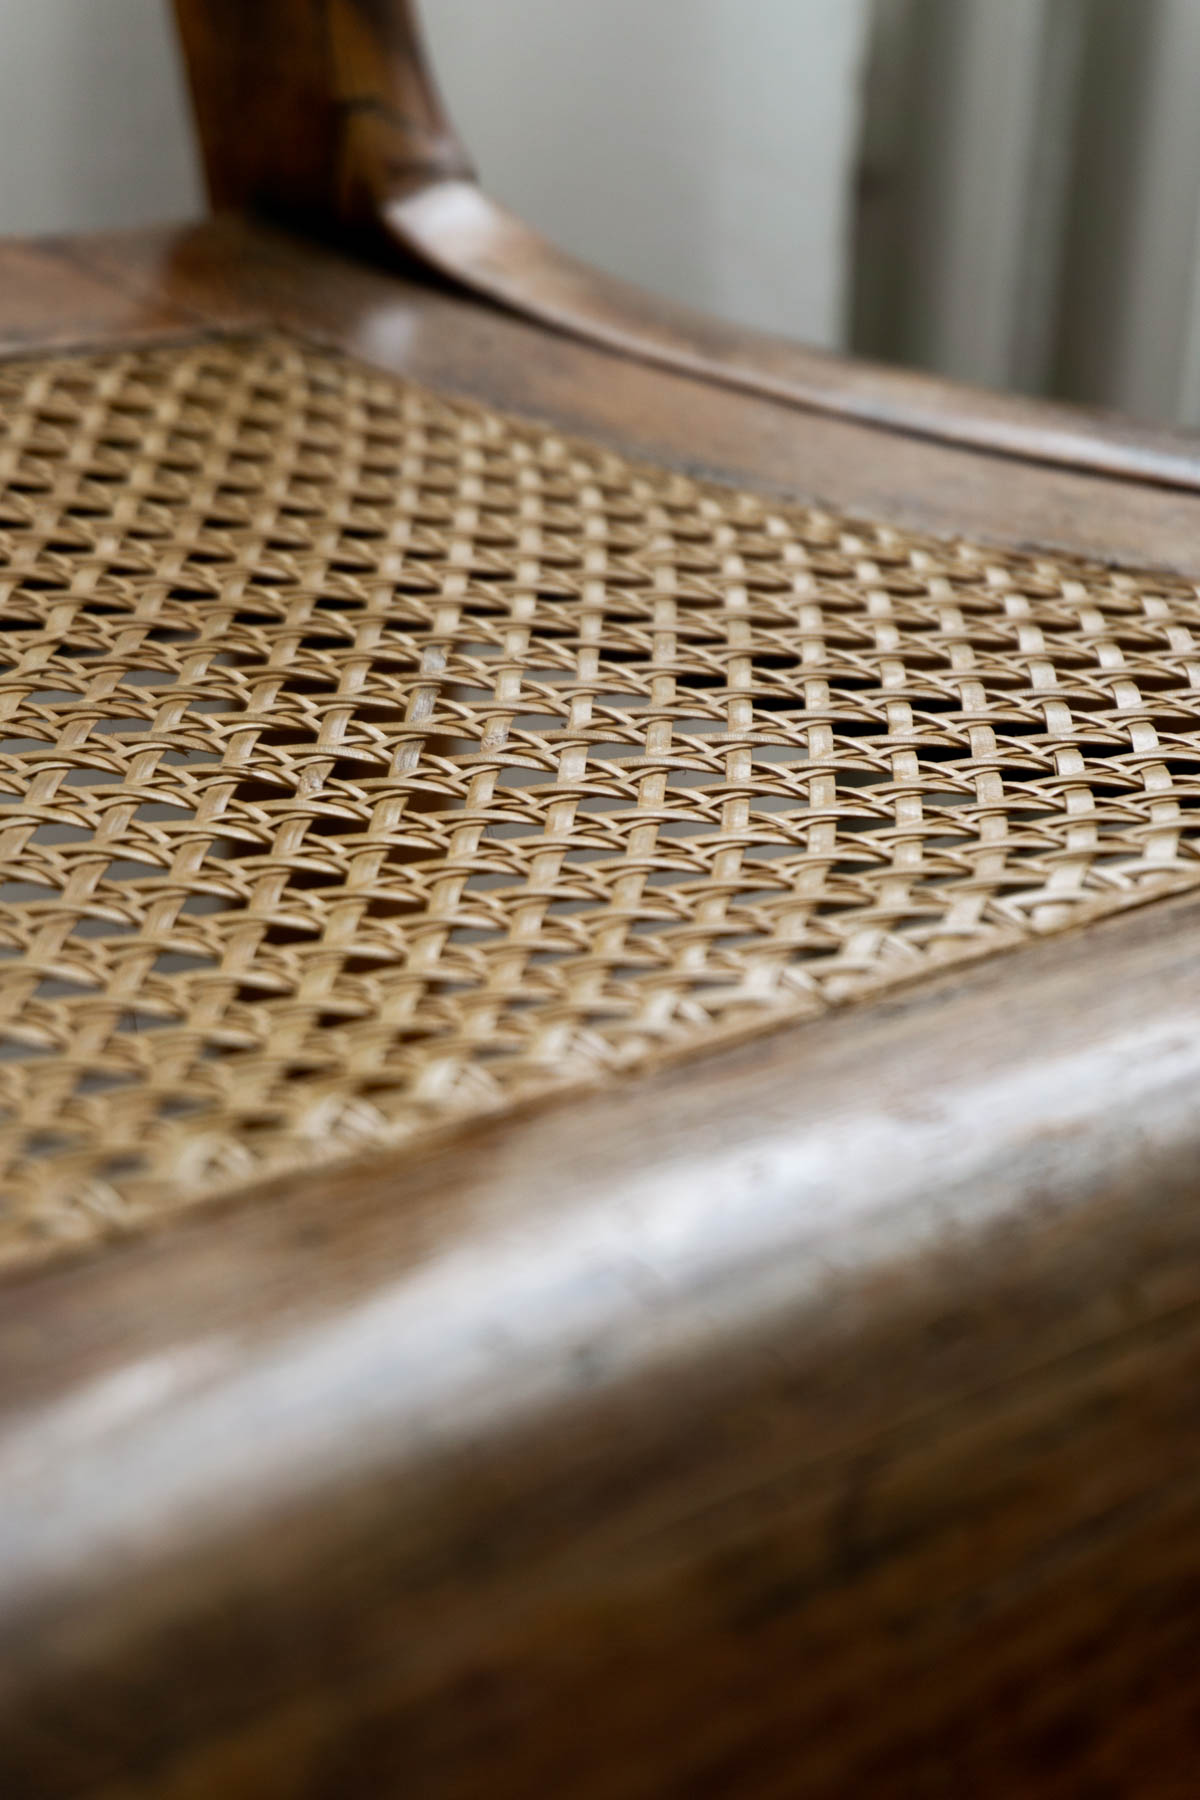 Vintage Cane Chair Details - Scandinavian Interior Design - Bedroom Details - RG Daily Blog